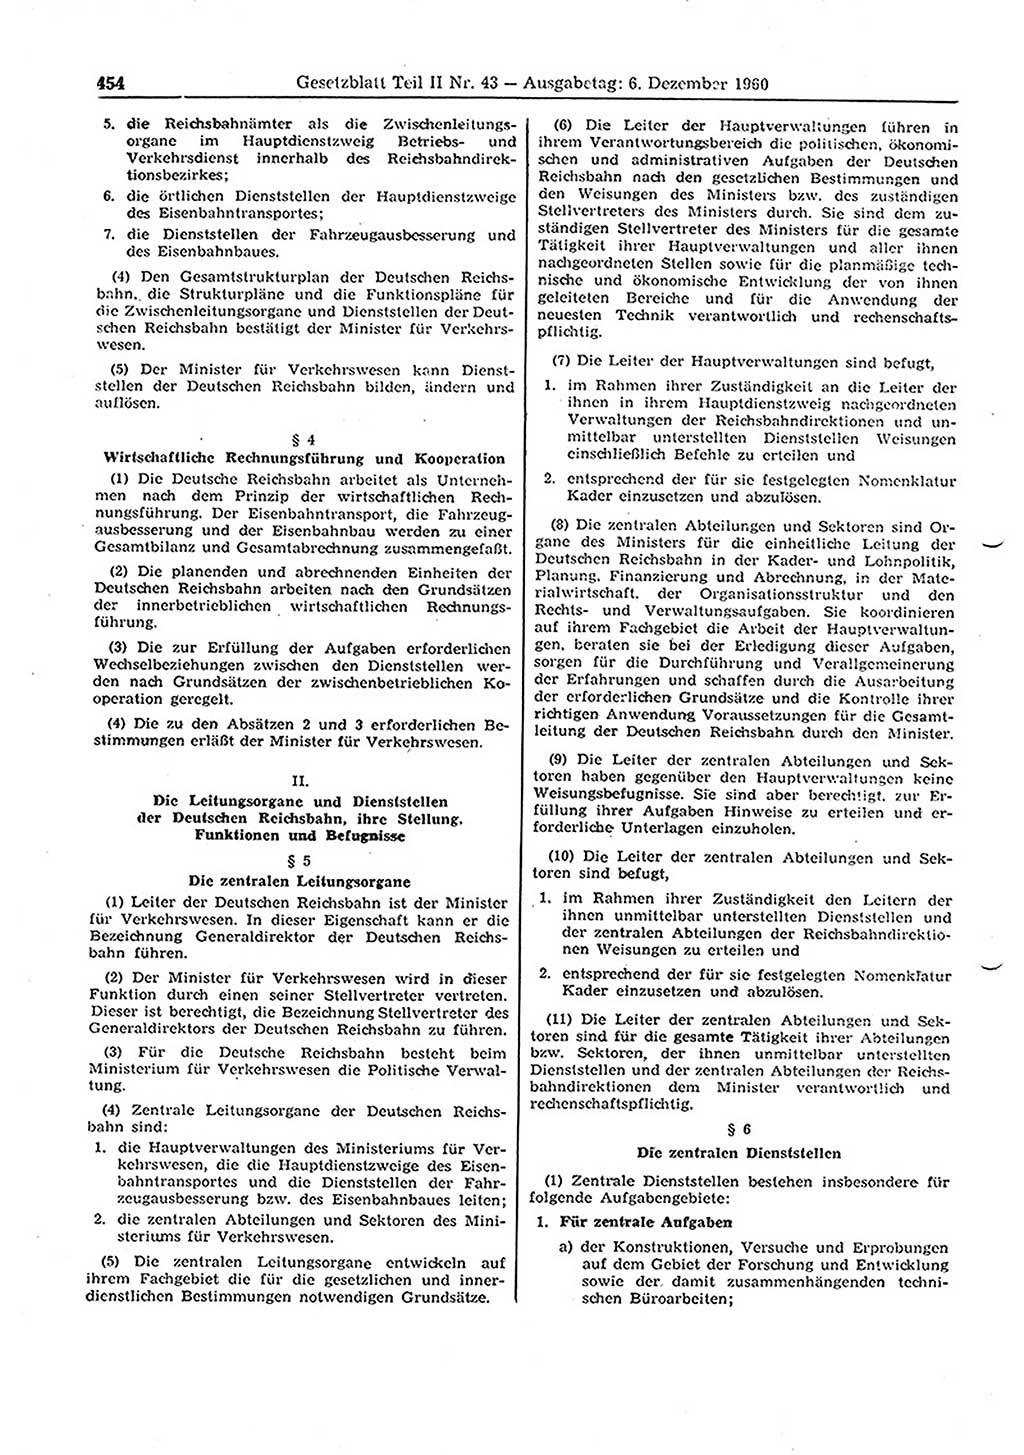 Gesetzblatt (GBl.) der Deutschen Demokratischen Republik (DDR) Teil ⅠⅠ 1960, Seite 454 (GBl. DDR ⅠⅠ 1960, S. 454)